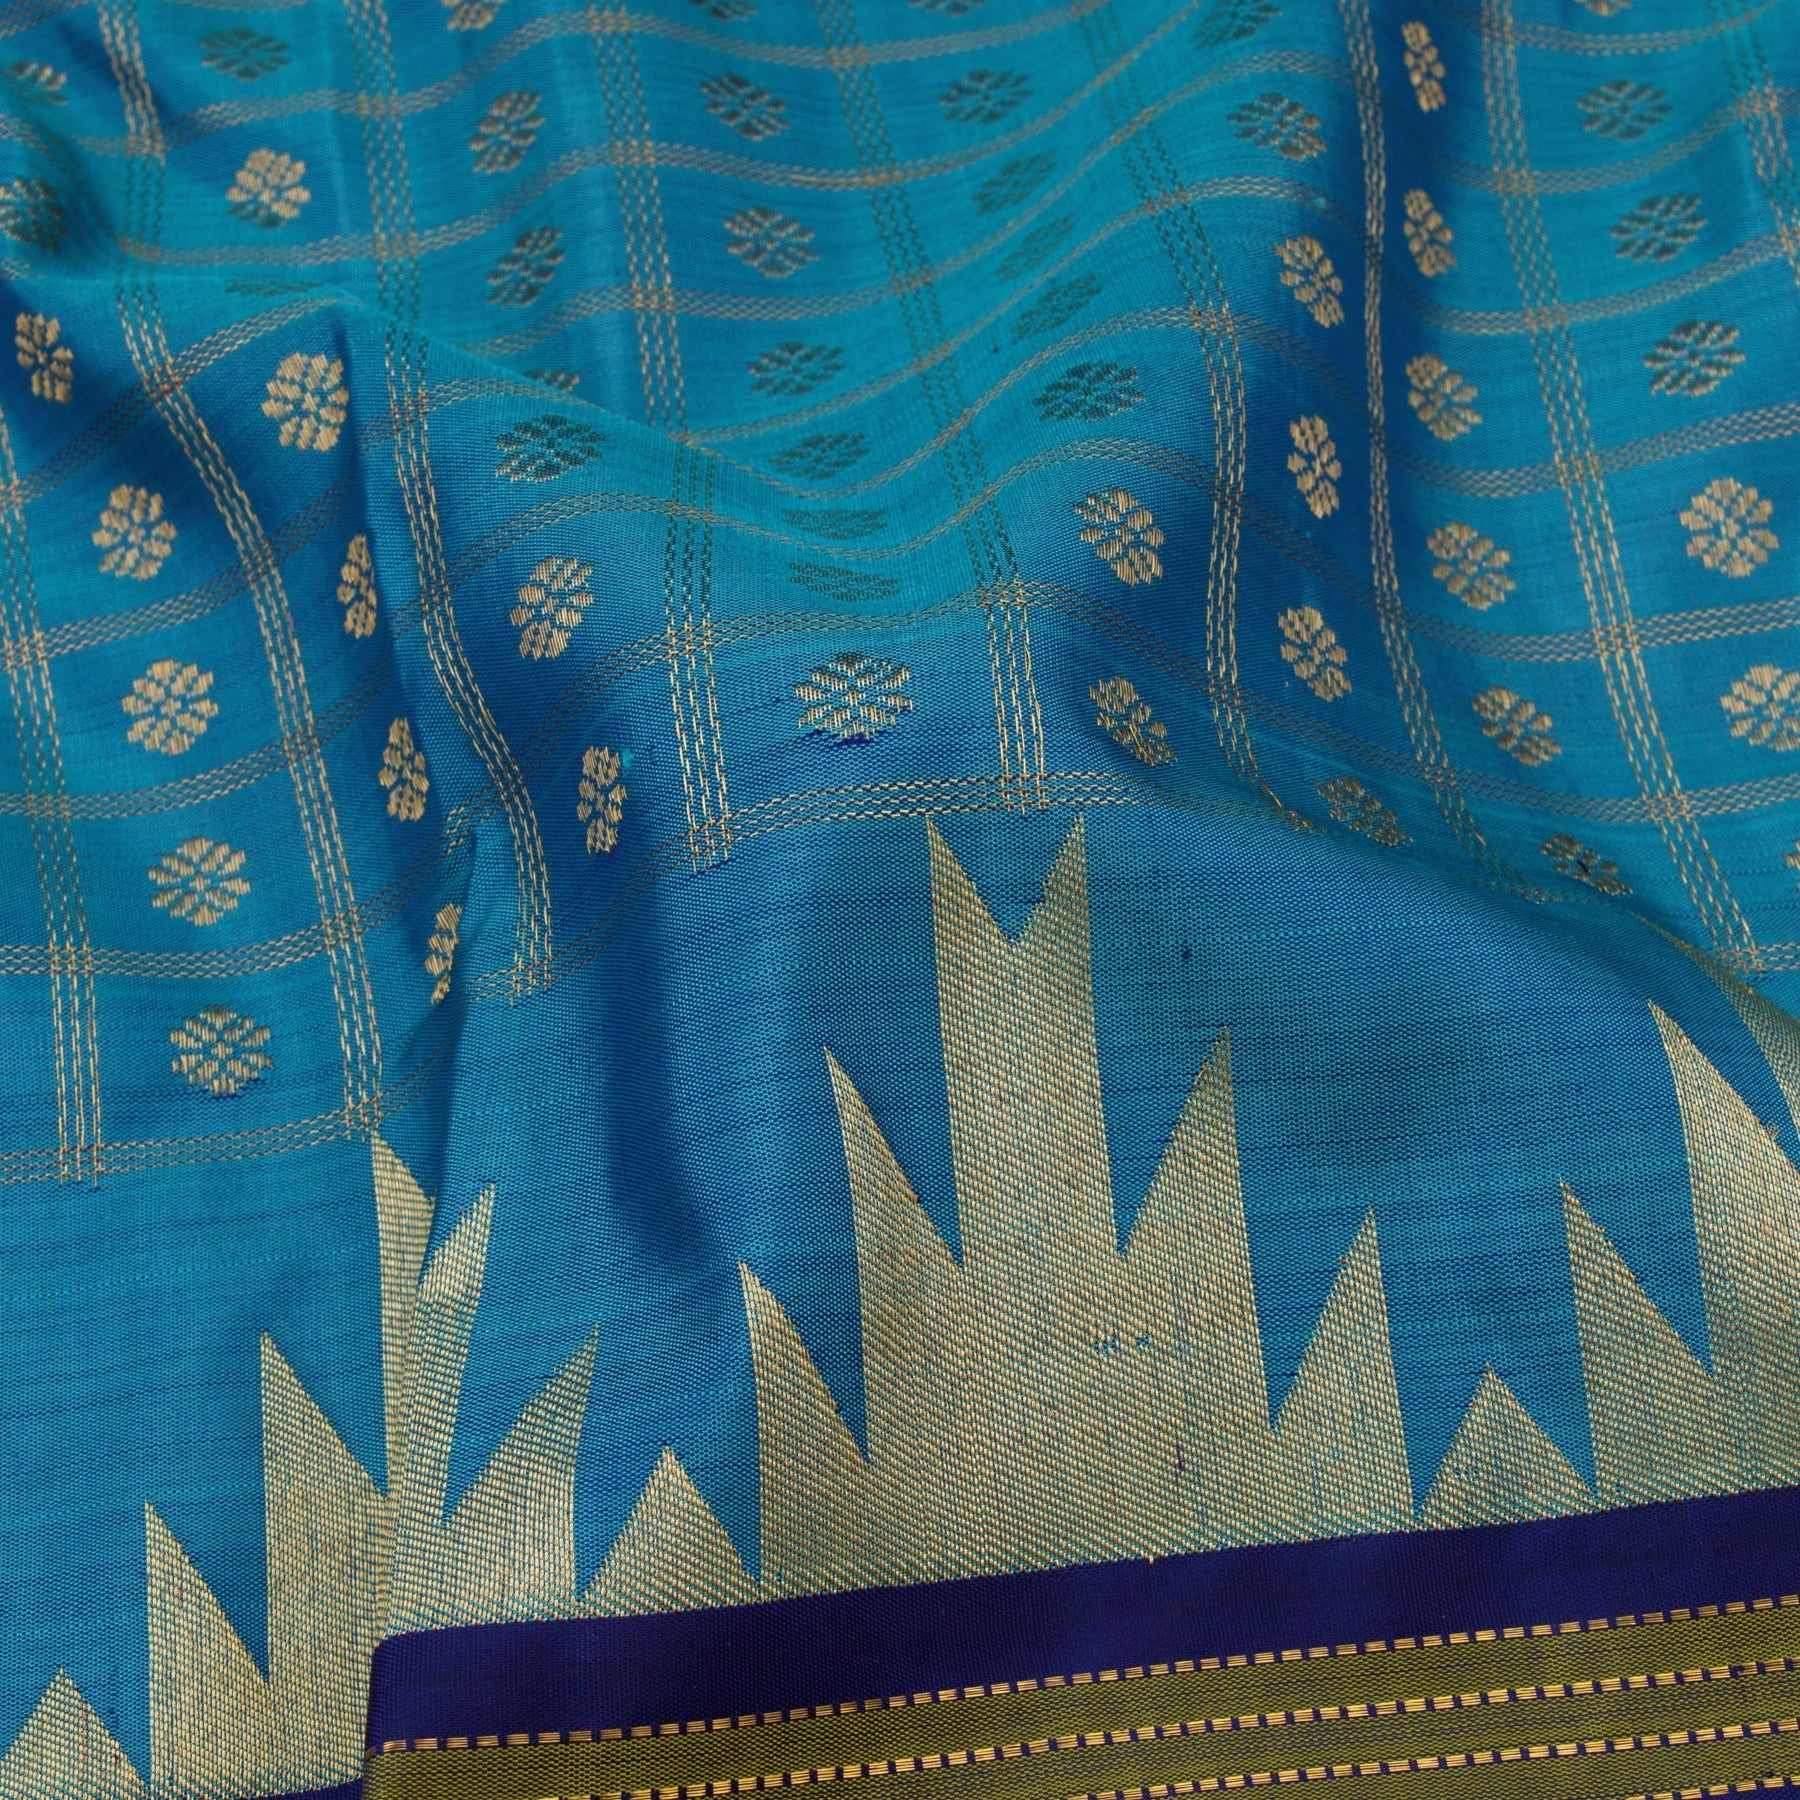 Kanakavalli Kanjivaram Silk Sari 22-040-HS001-01589 - Fabric View